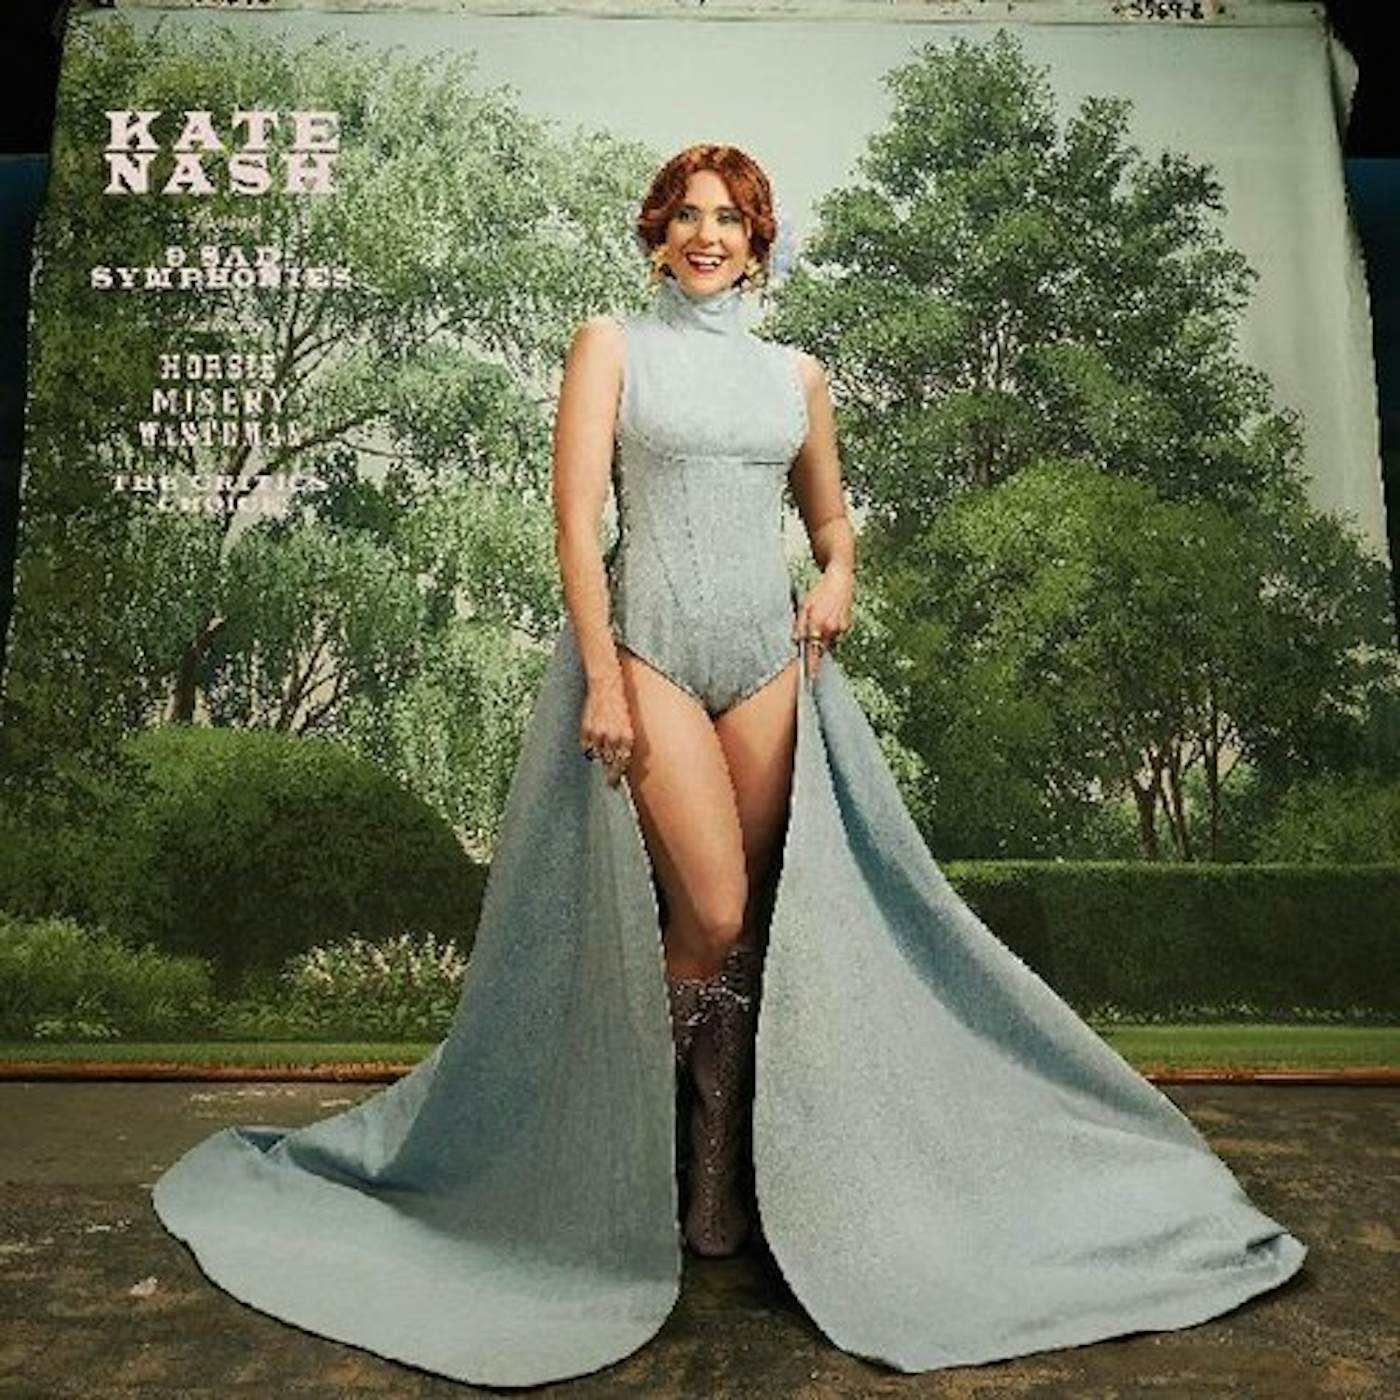 Kate Nash 9 SAD SYMPHONIES CD